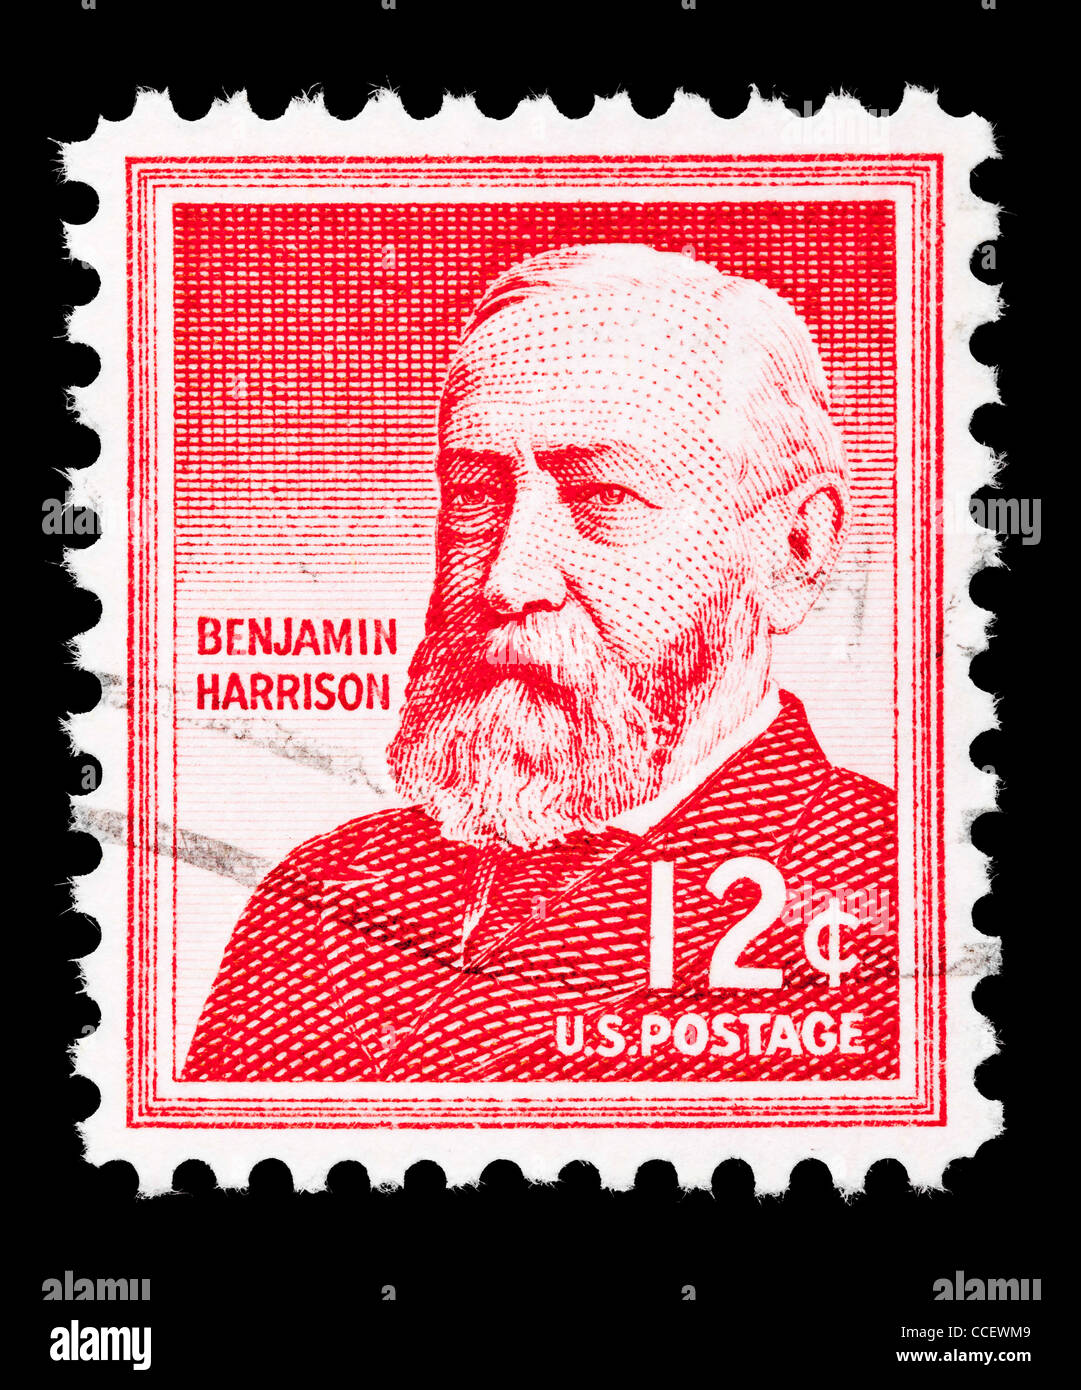 Sello de franqueo: Estados Unidos, Benjamin Harrison, el 12% de 1959, estampado Foto de stock